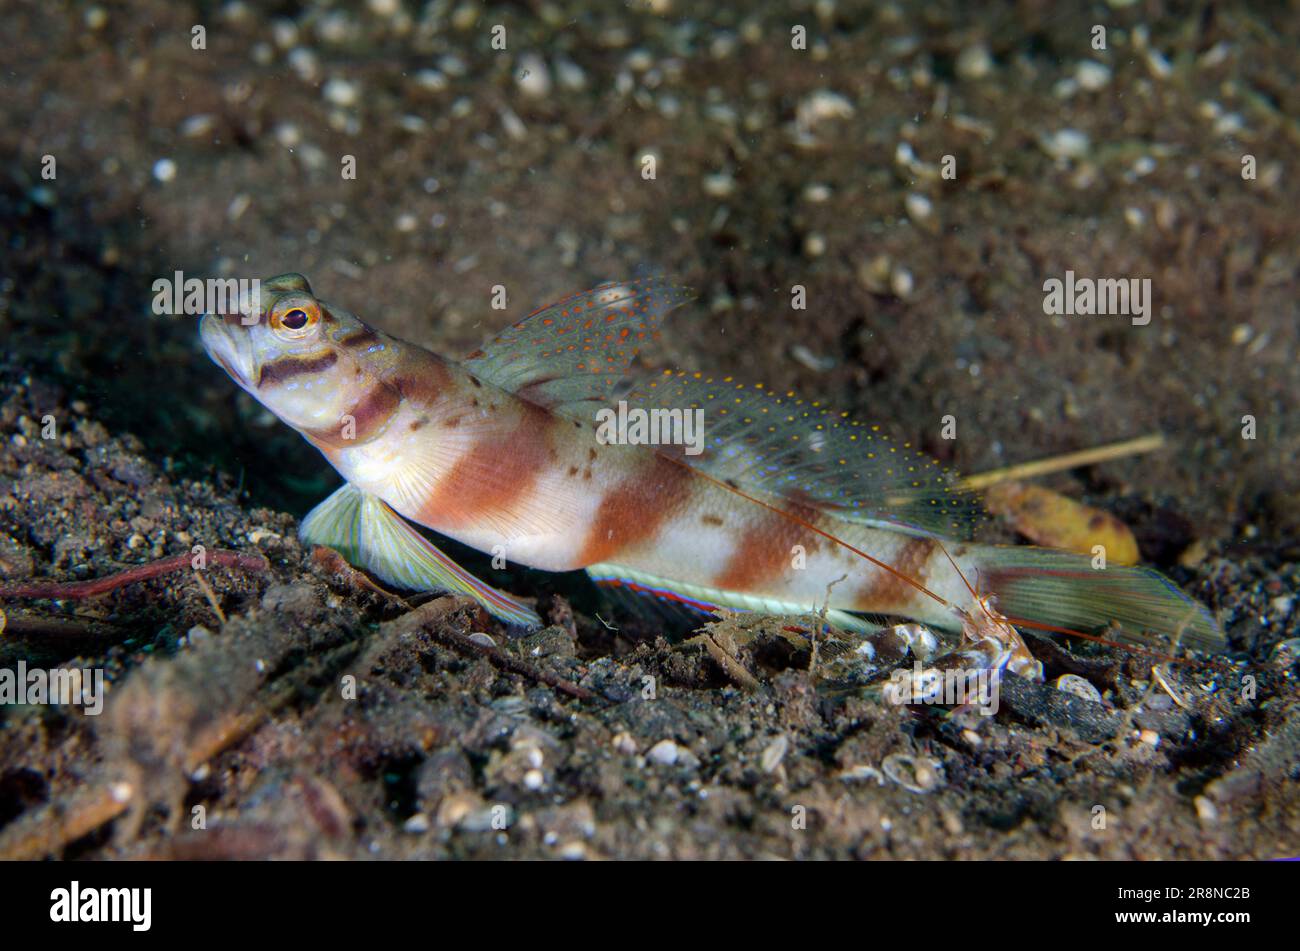 Slantbar Shrimpgoby, Amblyeleotris diagonalis, with Snapping Shrimp, Alpheus sp, by hole in sand, Melasti dive site, Amed, Karangasem, Bali, Indonesia Stock Photo